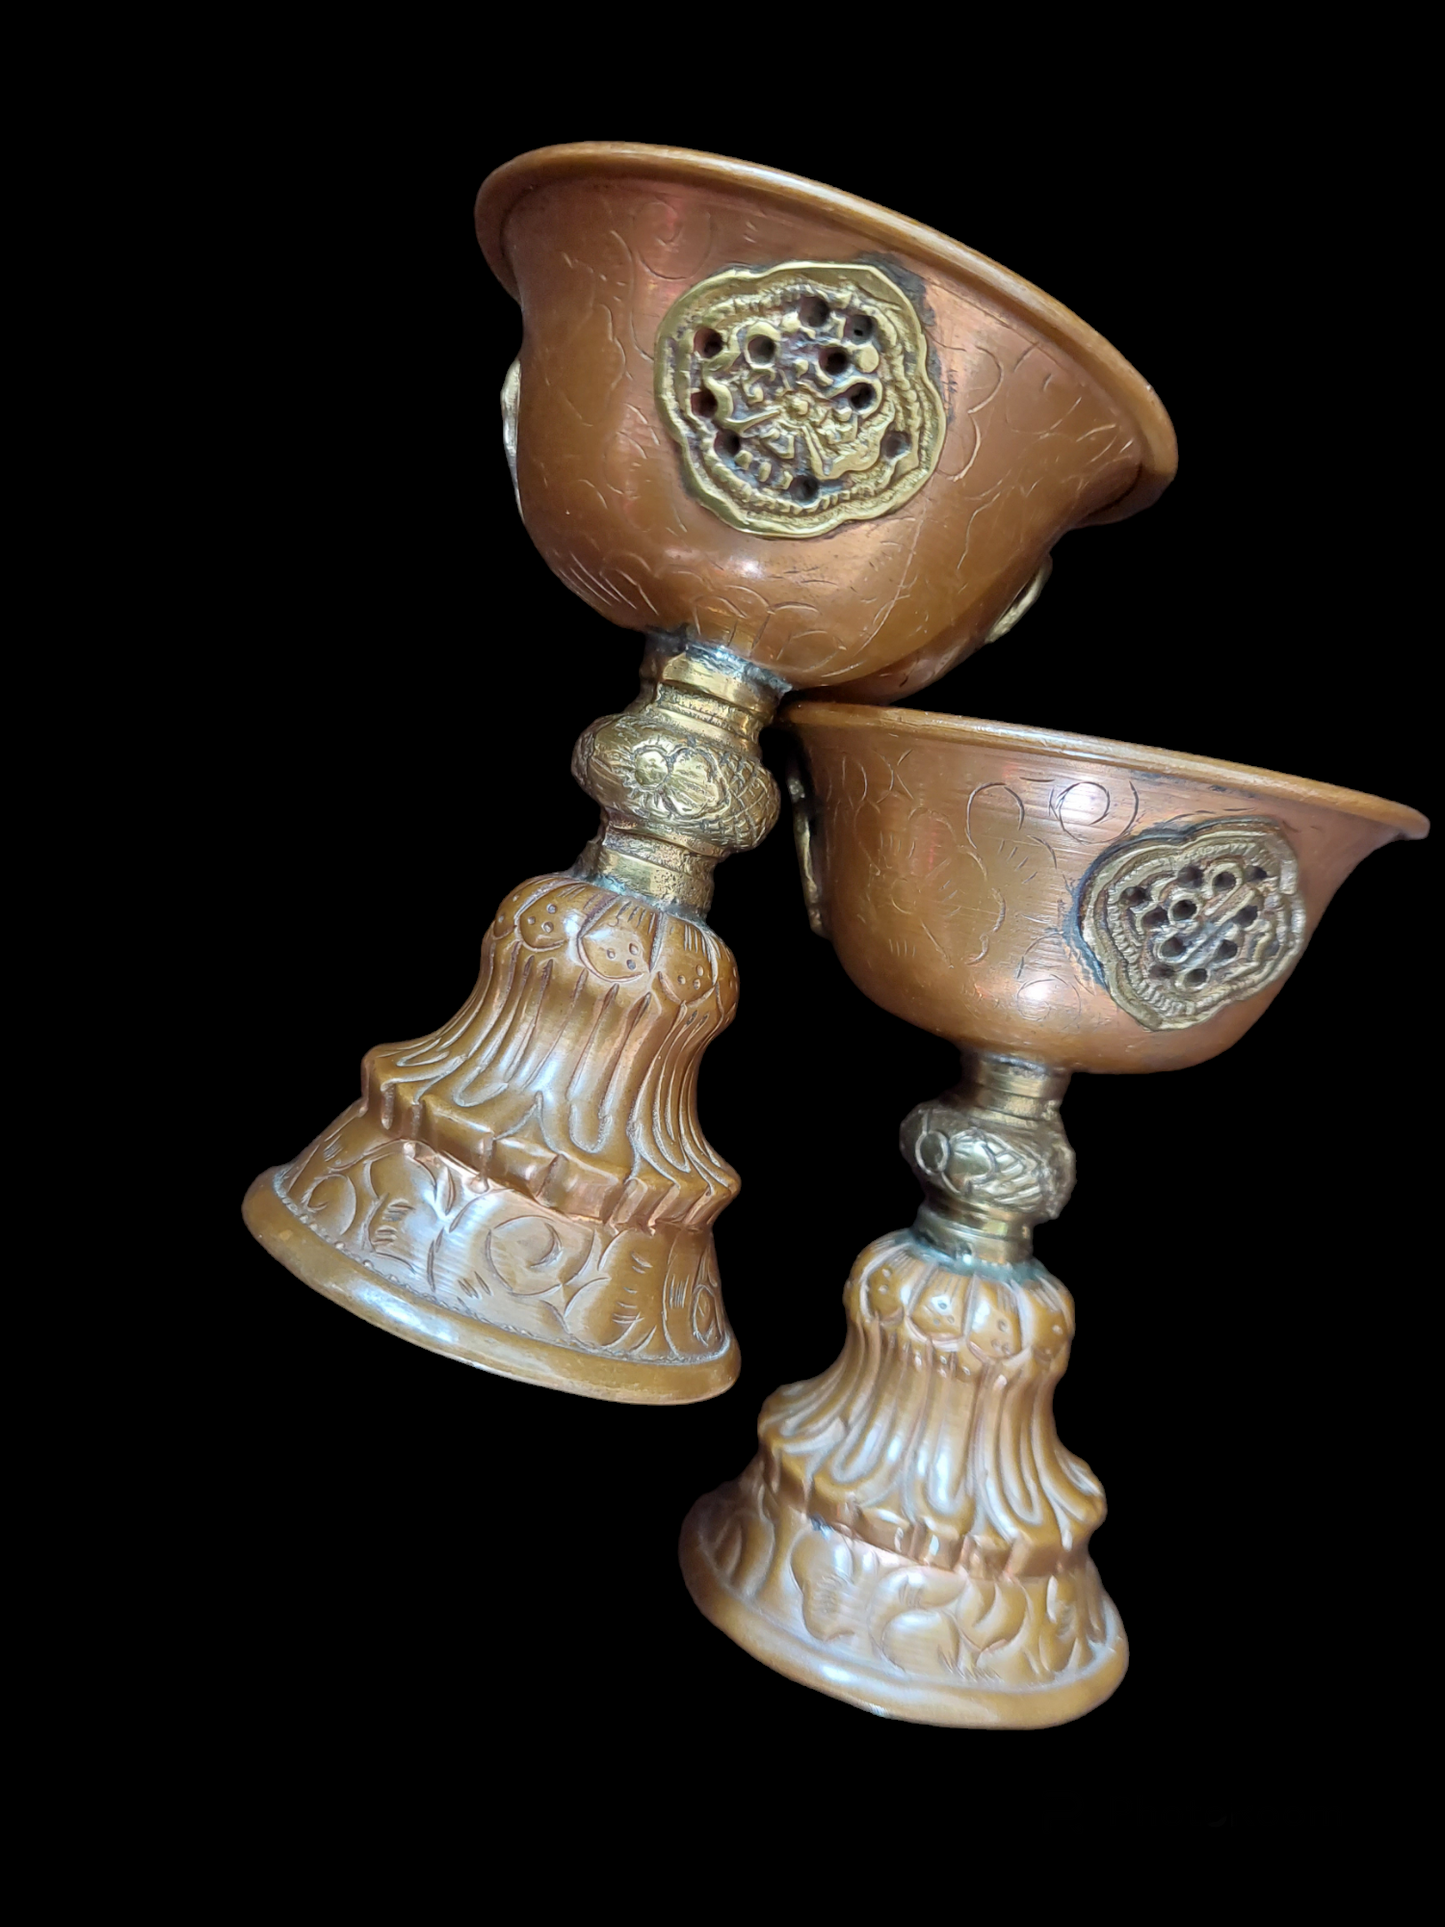 Vintage Tibetan chula ghee lamp 95 millimeters